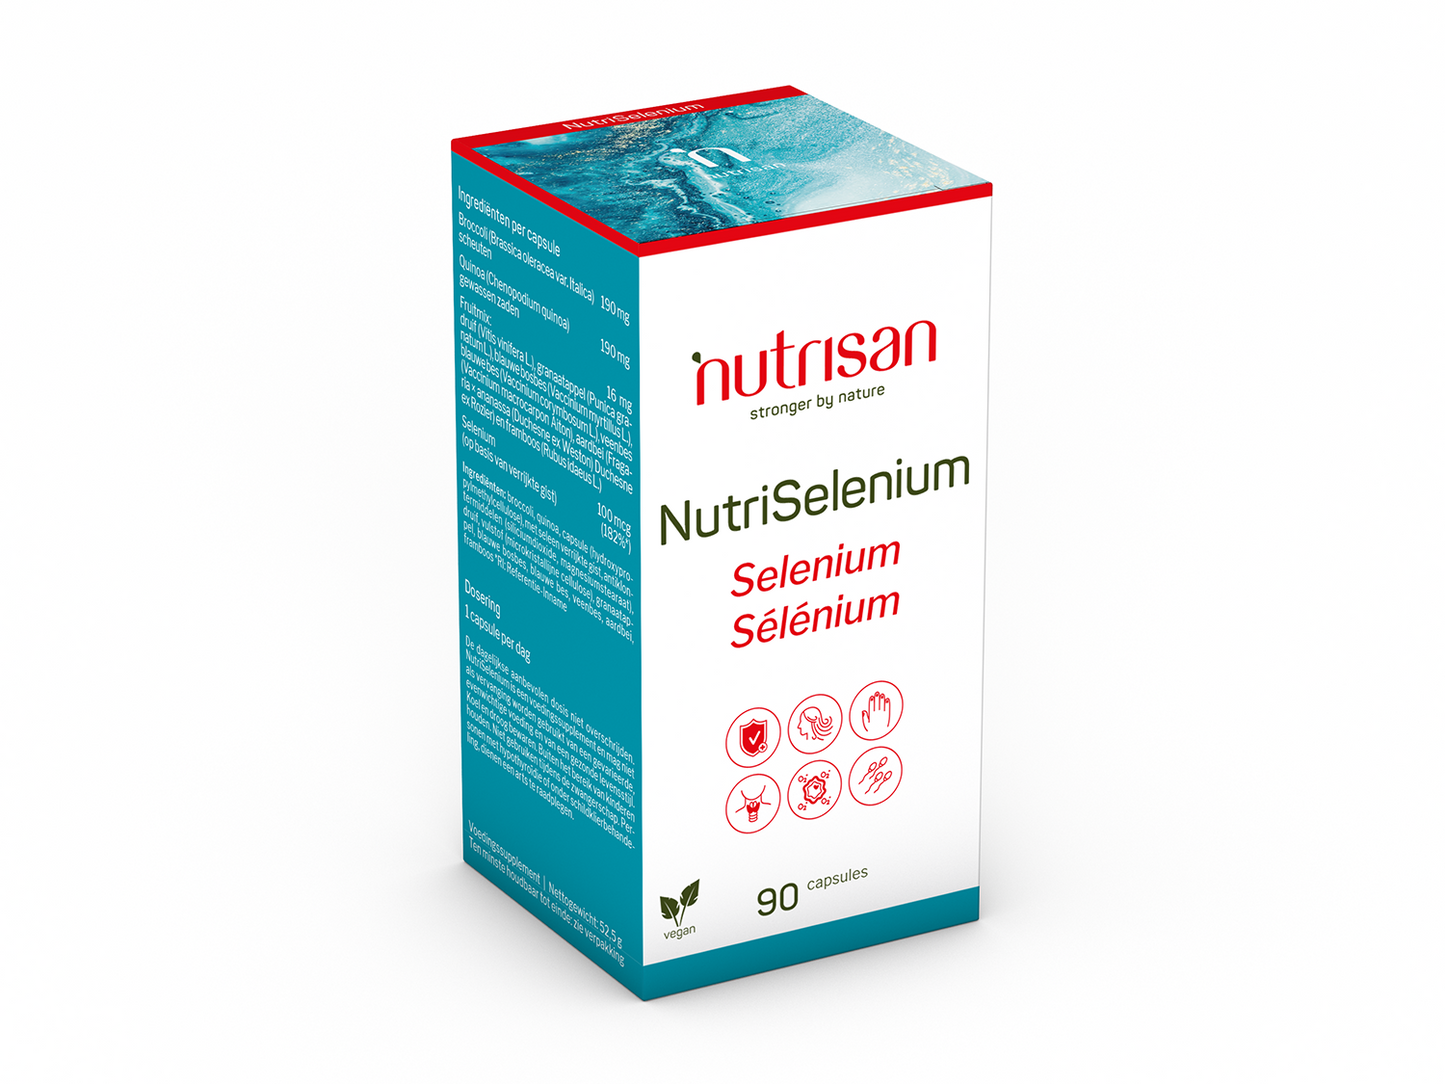 Nutrisan NutriSelenium - Supplement voor haar, nagels en stress